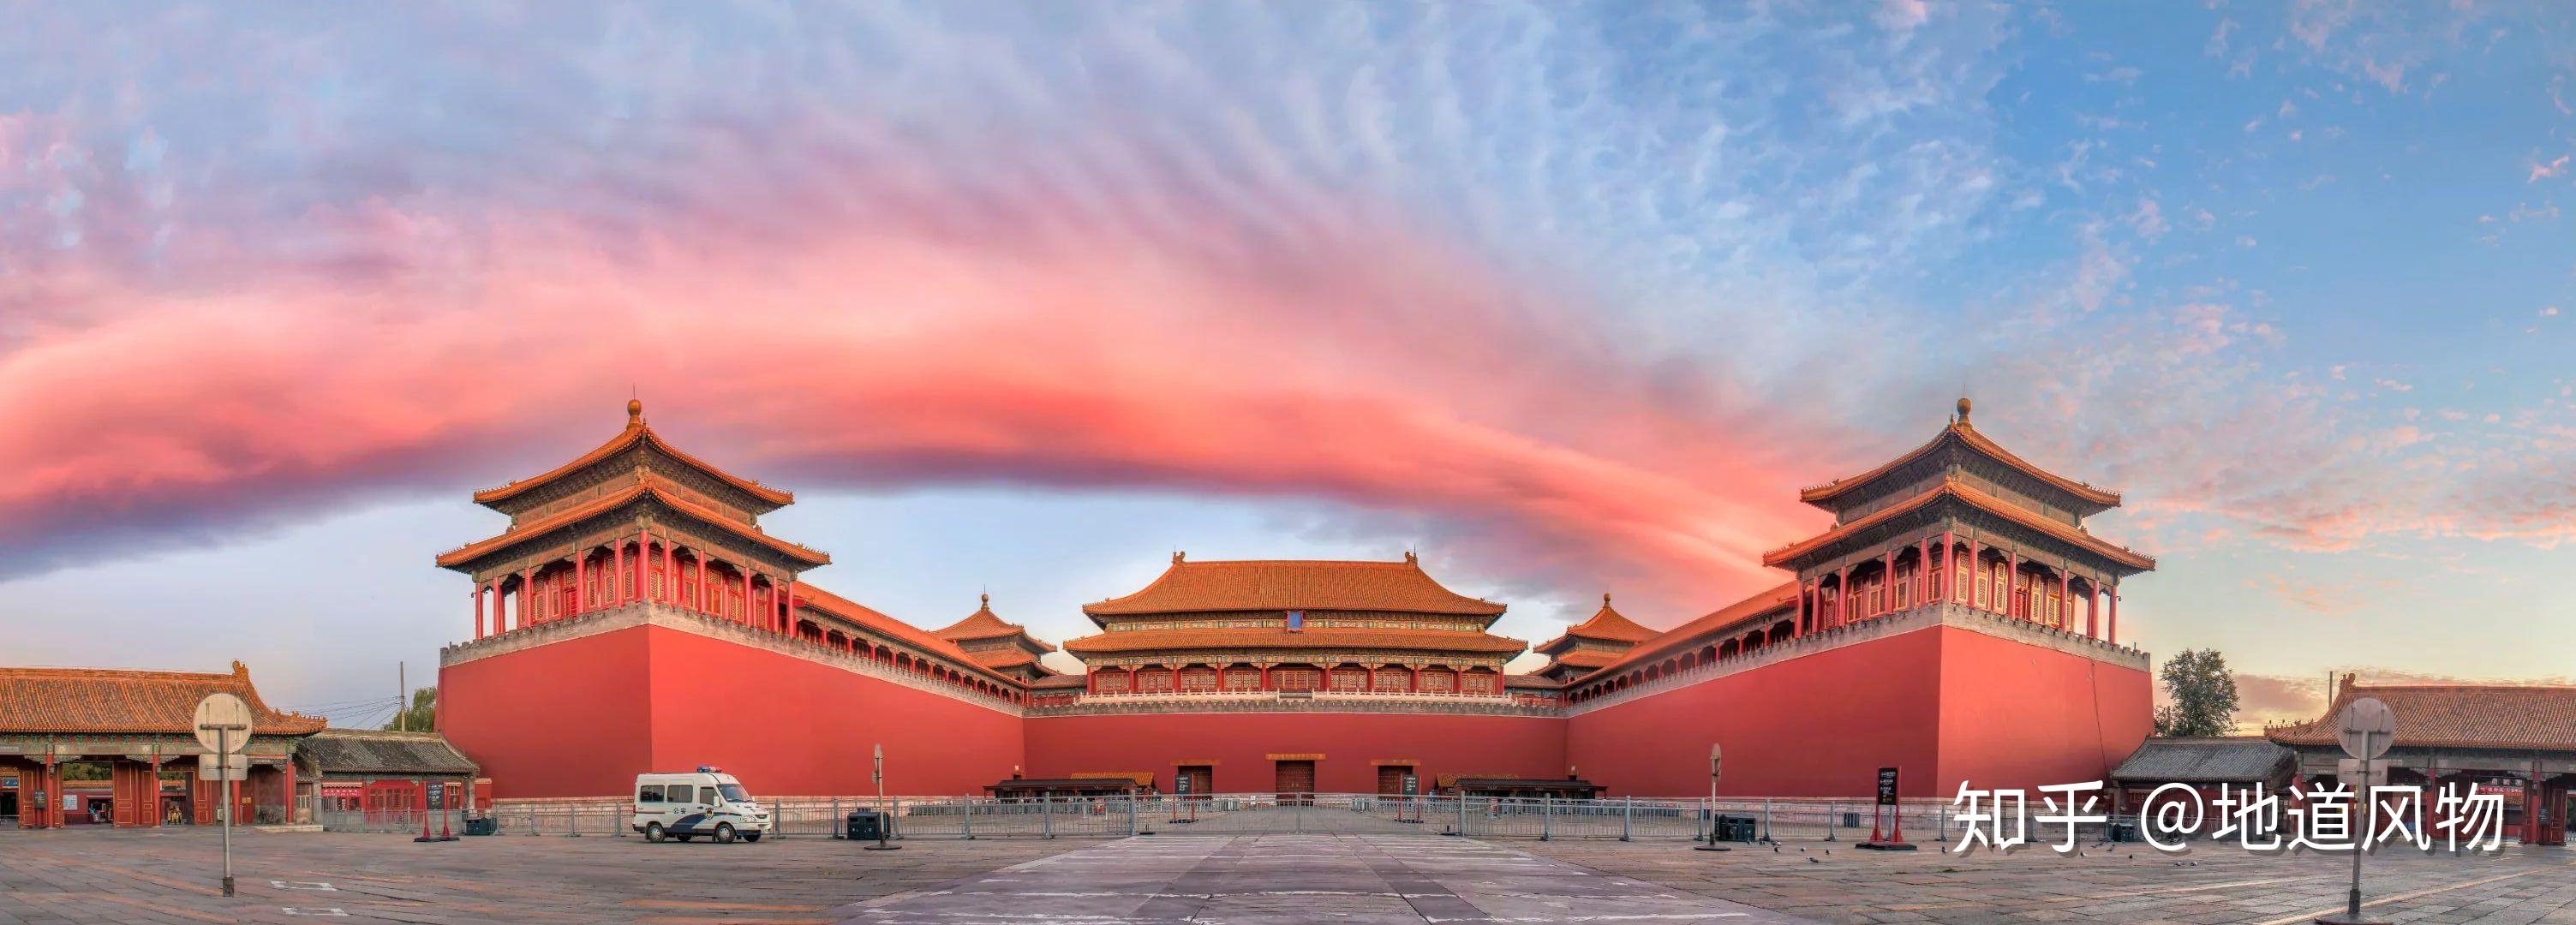 故宫航拍全景图高清_北京故宫从上往下看全景图_微信公众号文章